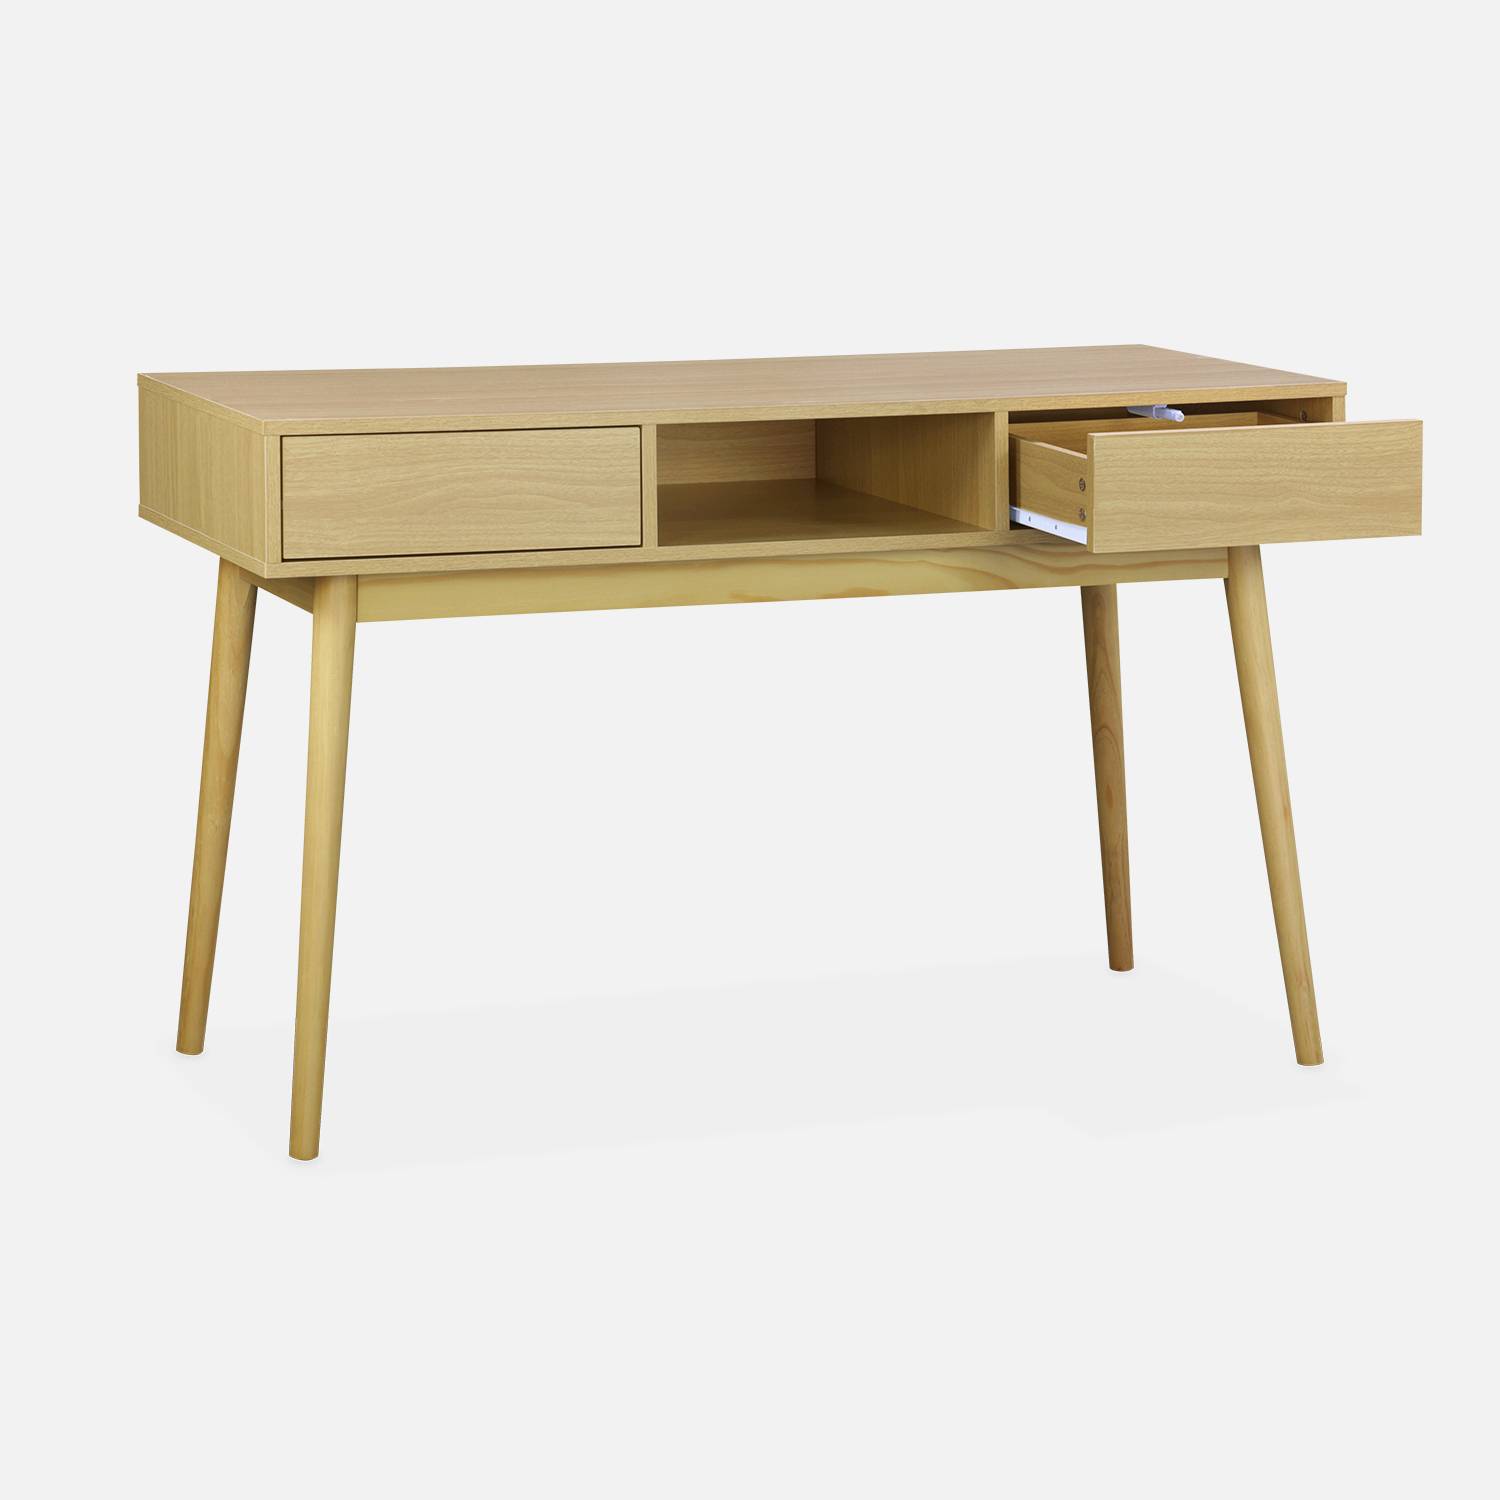 Console décor bois - Mika - 2 tiroirs, 1 casier de rangement, pieds scandinaves, L 120 x l 48 x H 75cm  Photo3